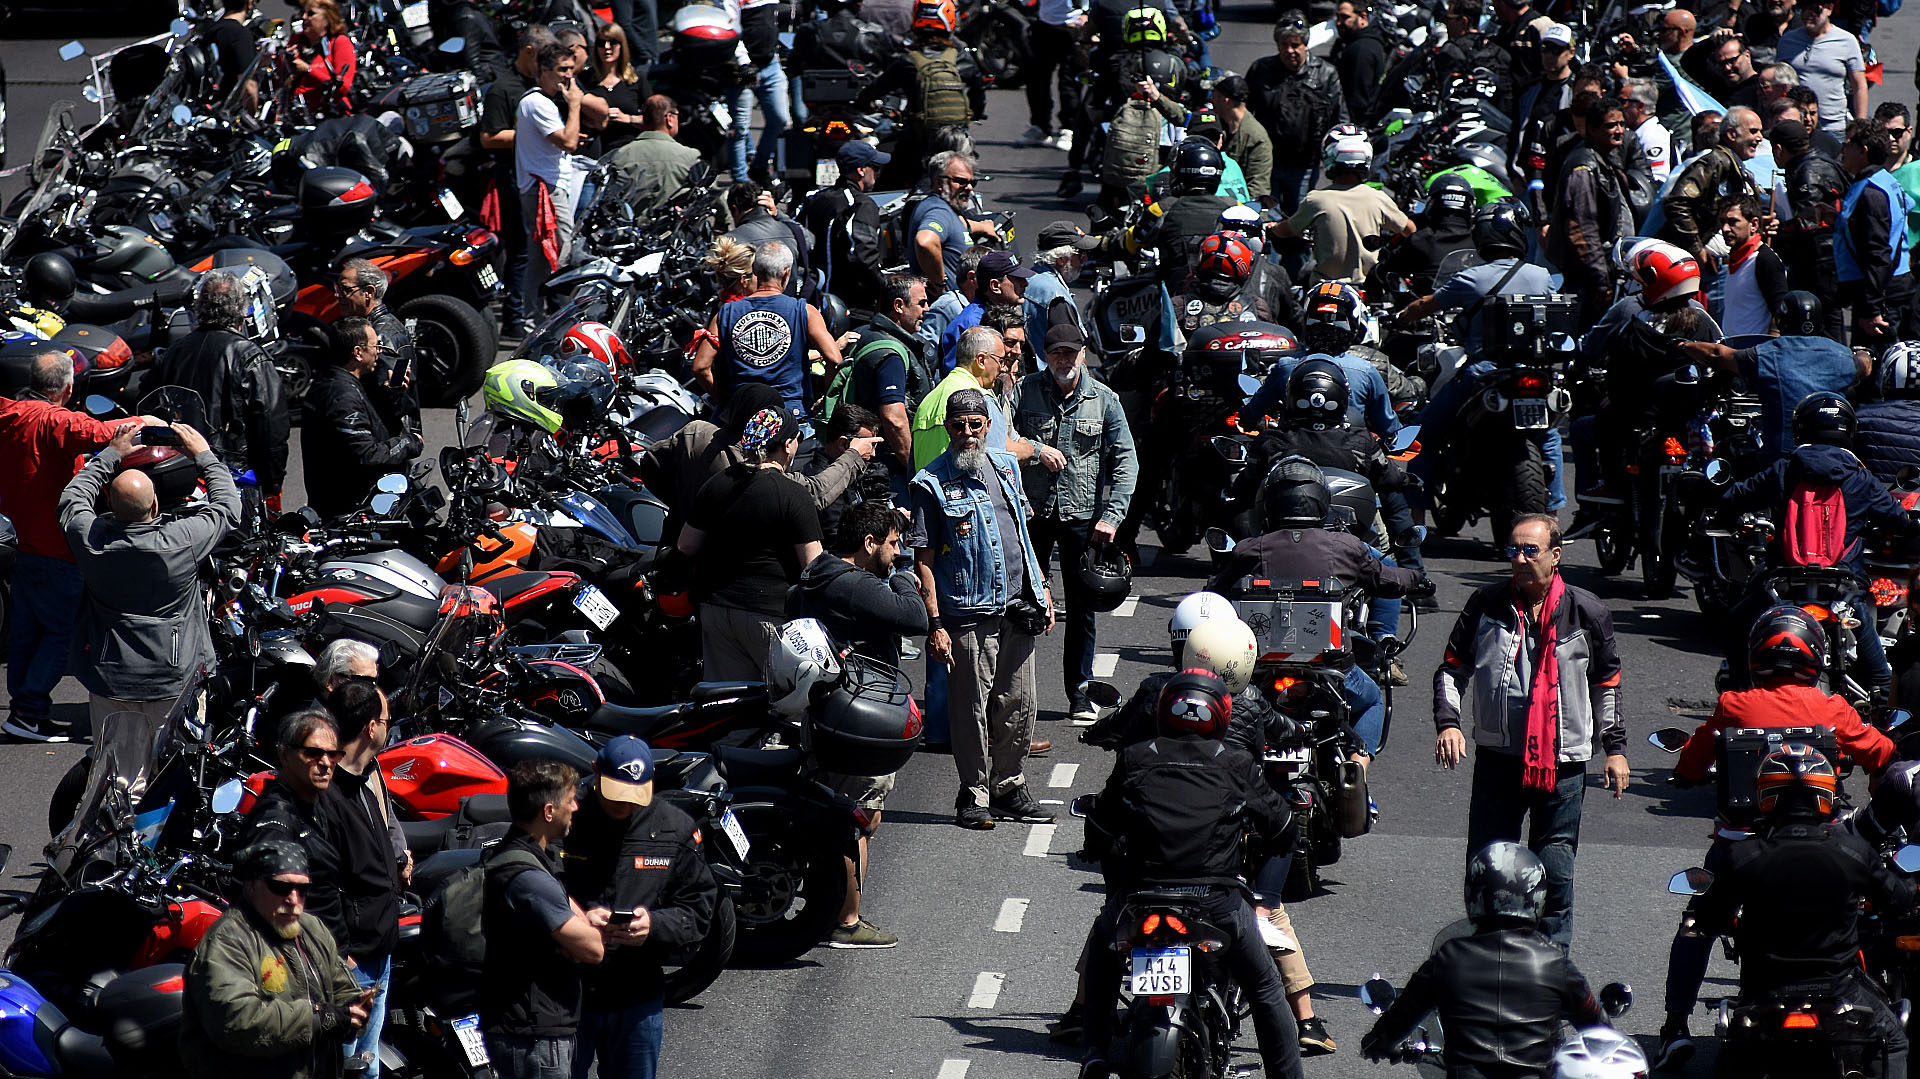 “Basta de cazarnos”: motociclistas volverán a marchar en reclamo de seguridad ante la ola de ataques motochorros